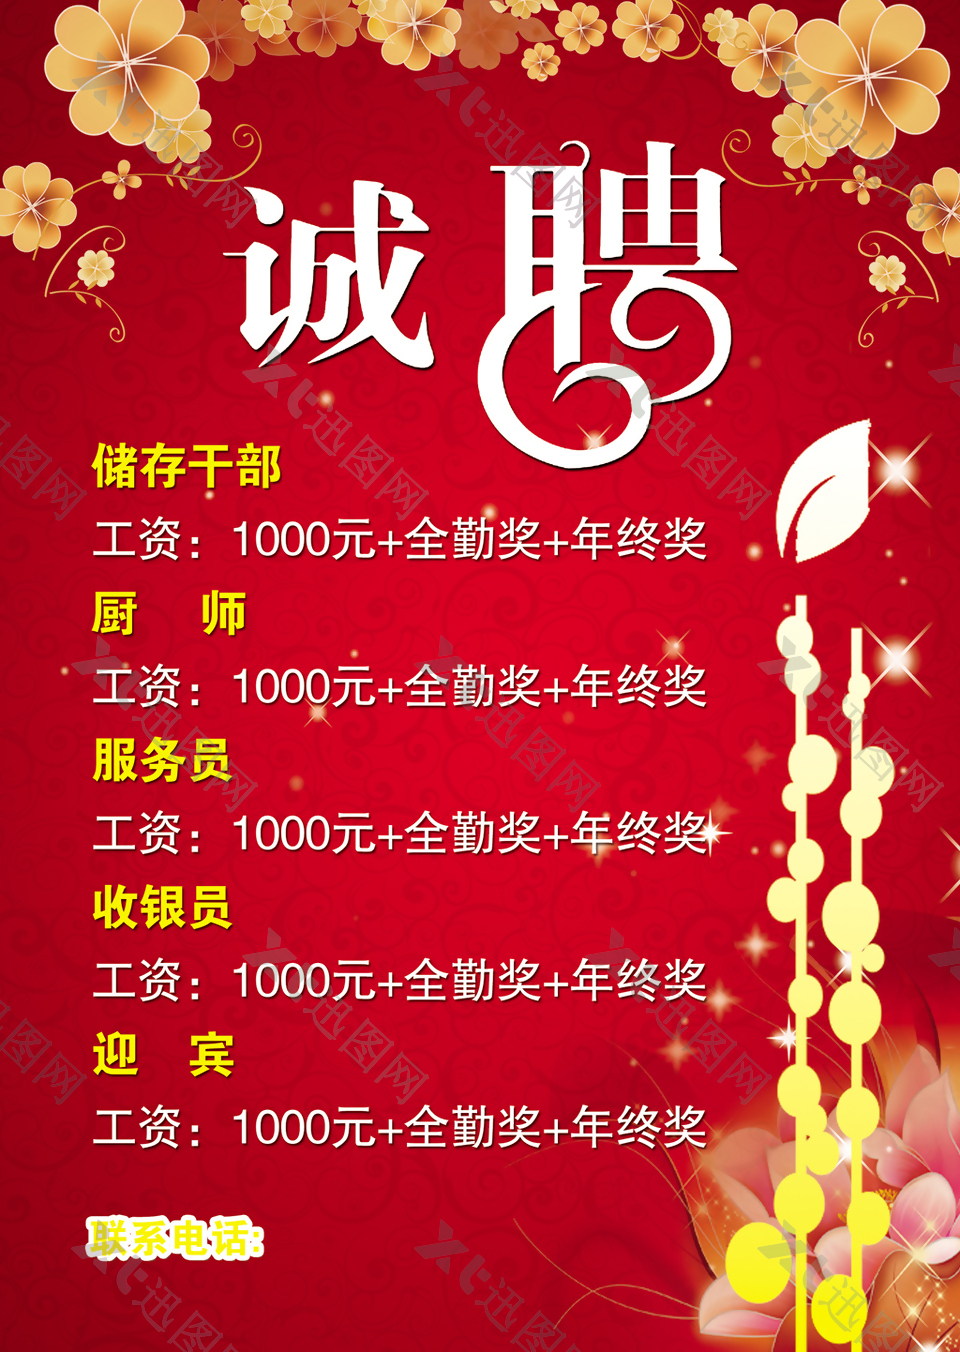 红色中国风餐厅招聘宣传海报